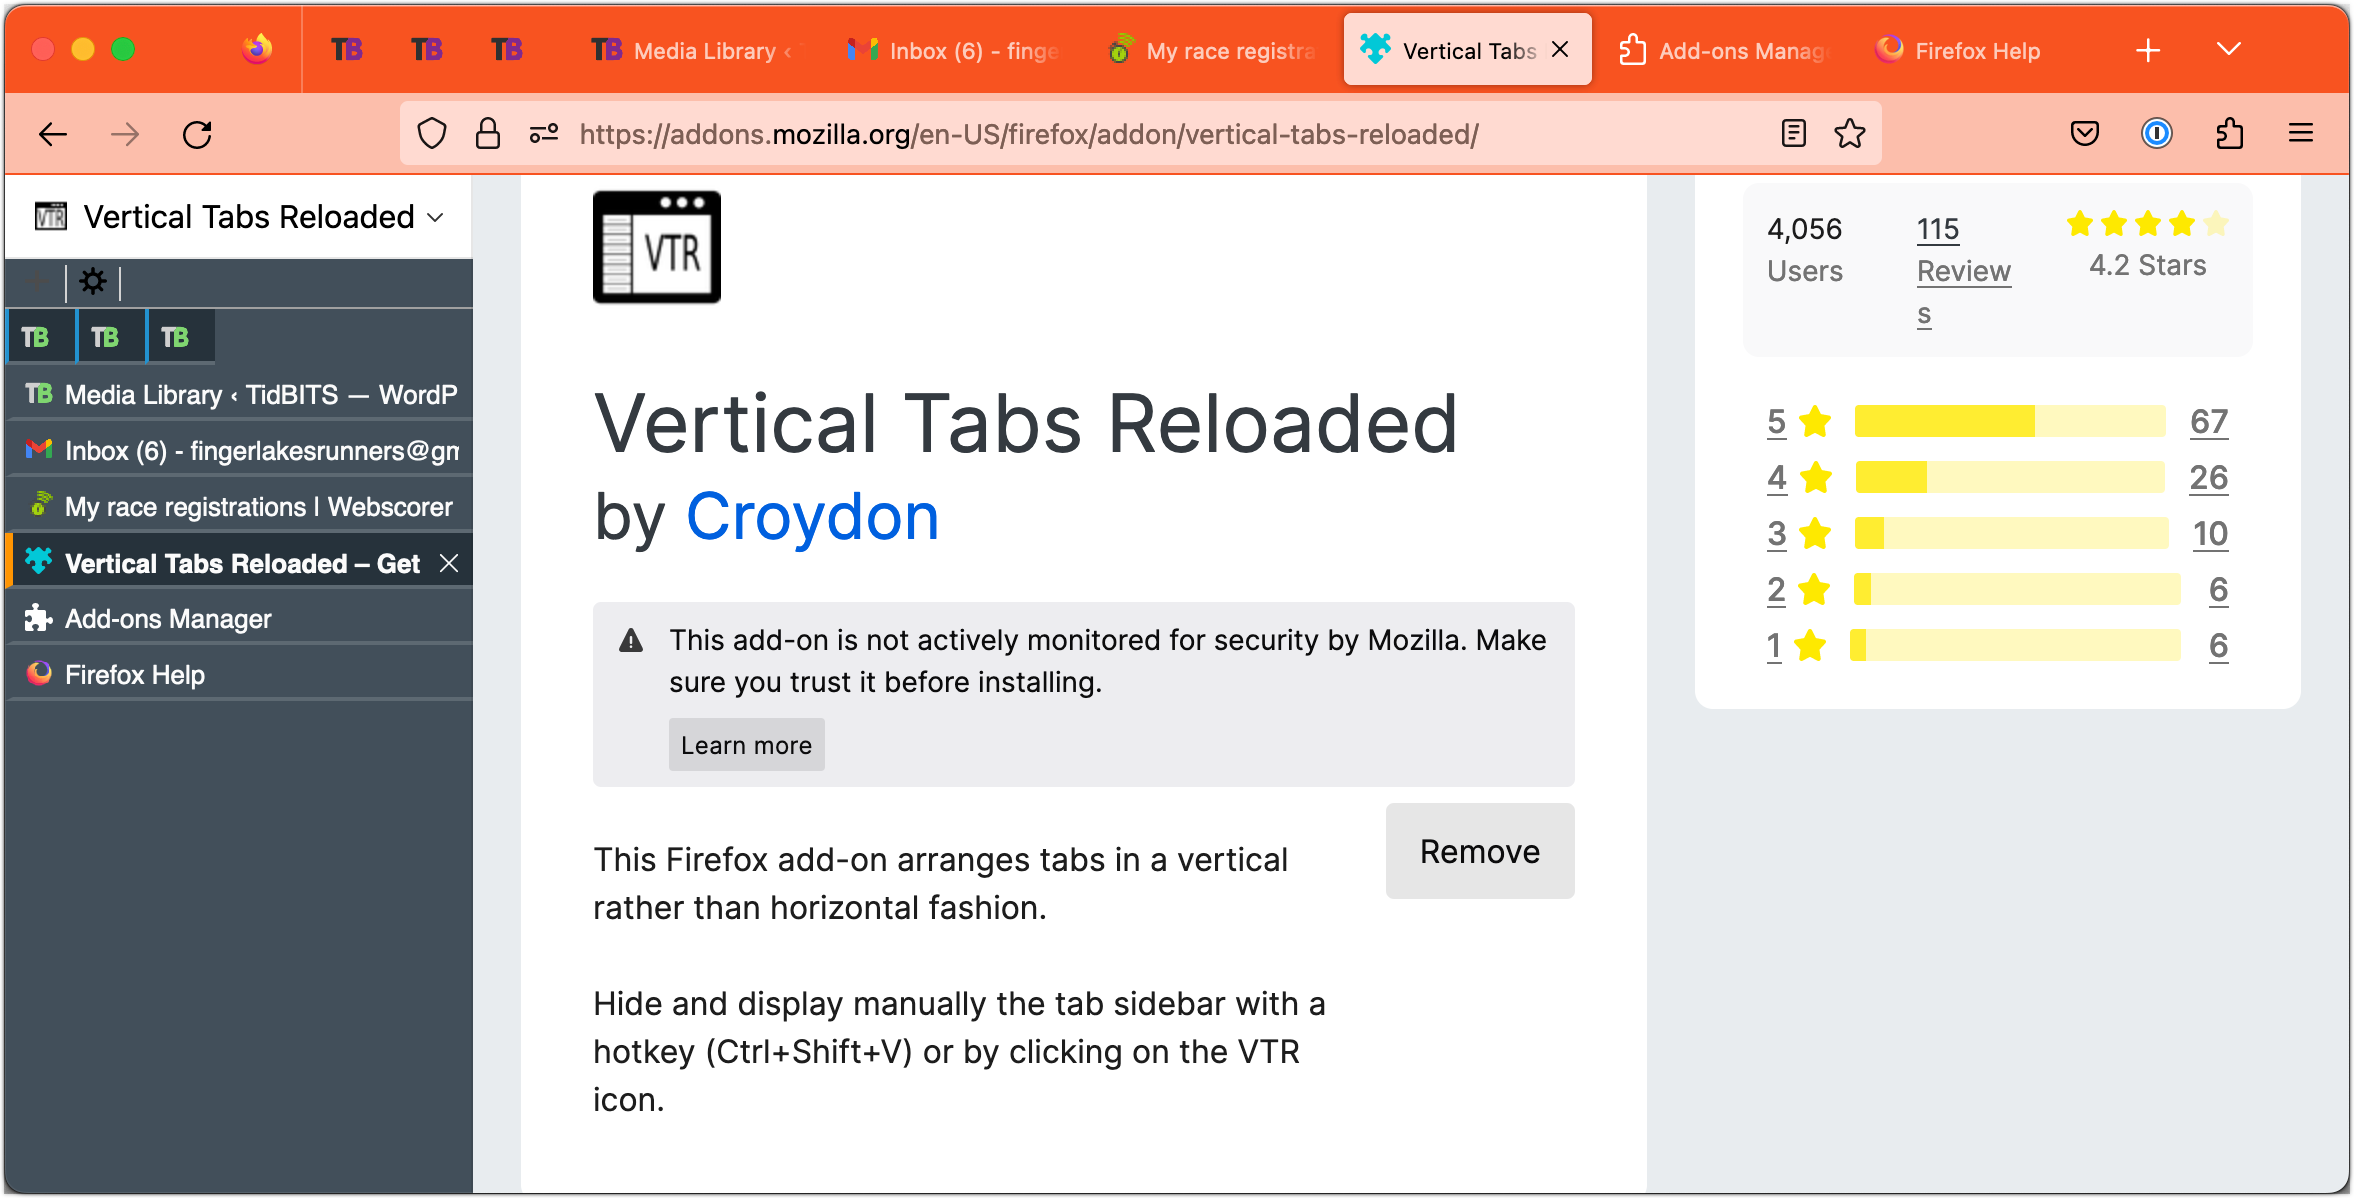 Vertical Tabs Reloaded in Firefox